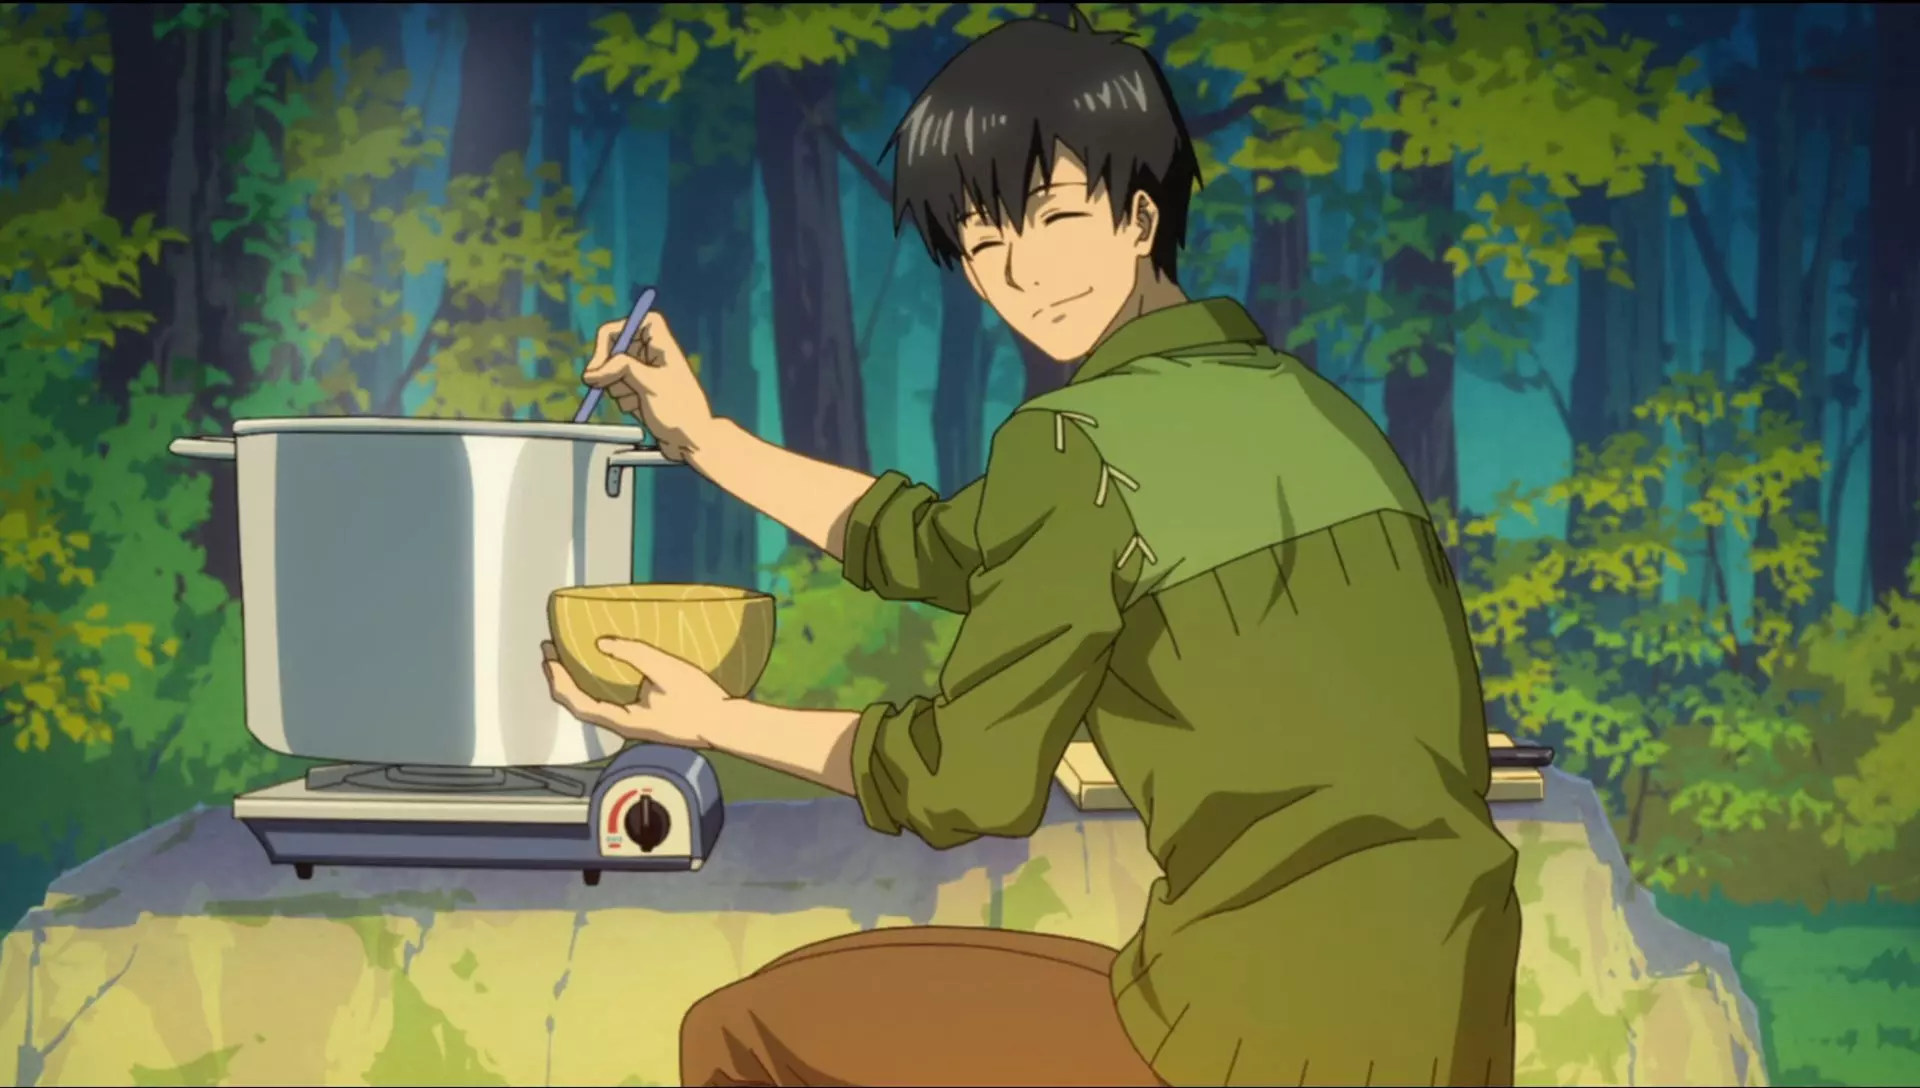 مرد جوان در حال آشپزی کردن و ریختن غذا از دیگ داخل کاسه از انیمه آشپزی در جهان دیگر